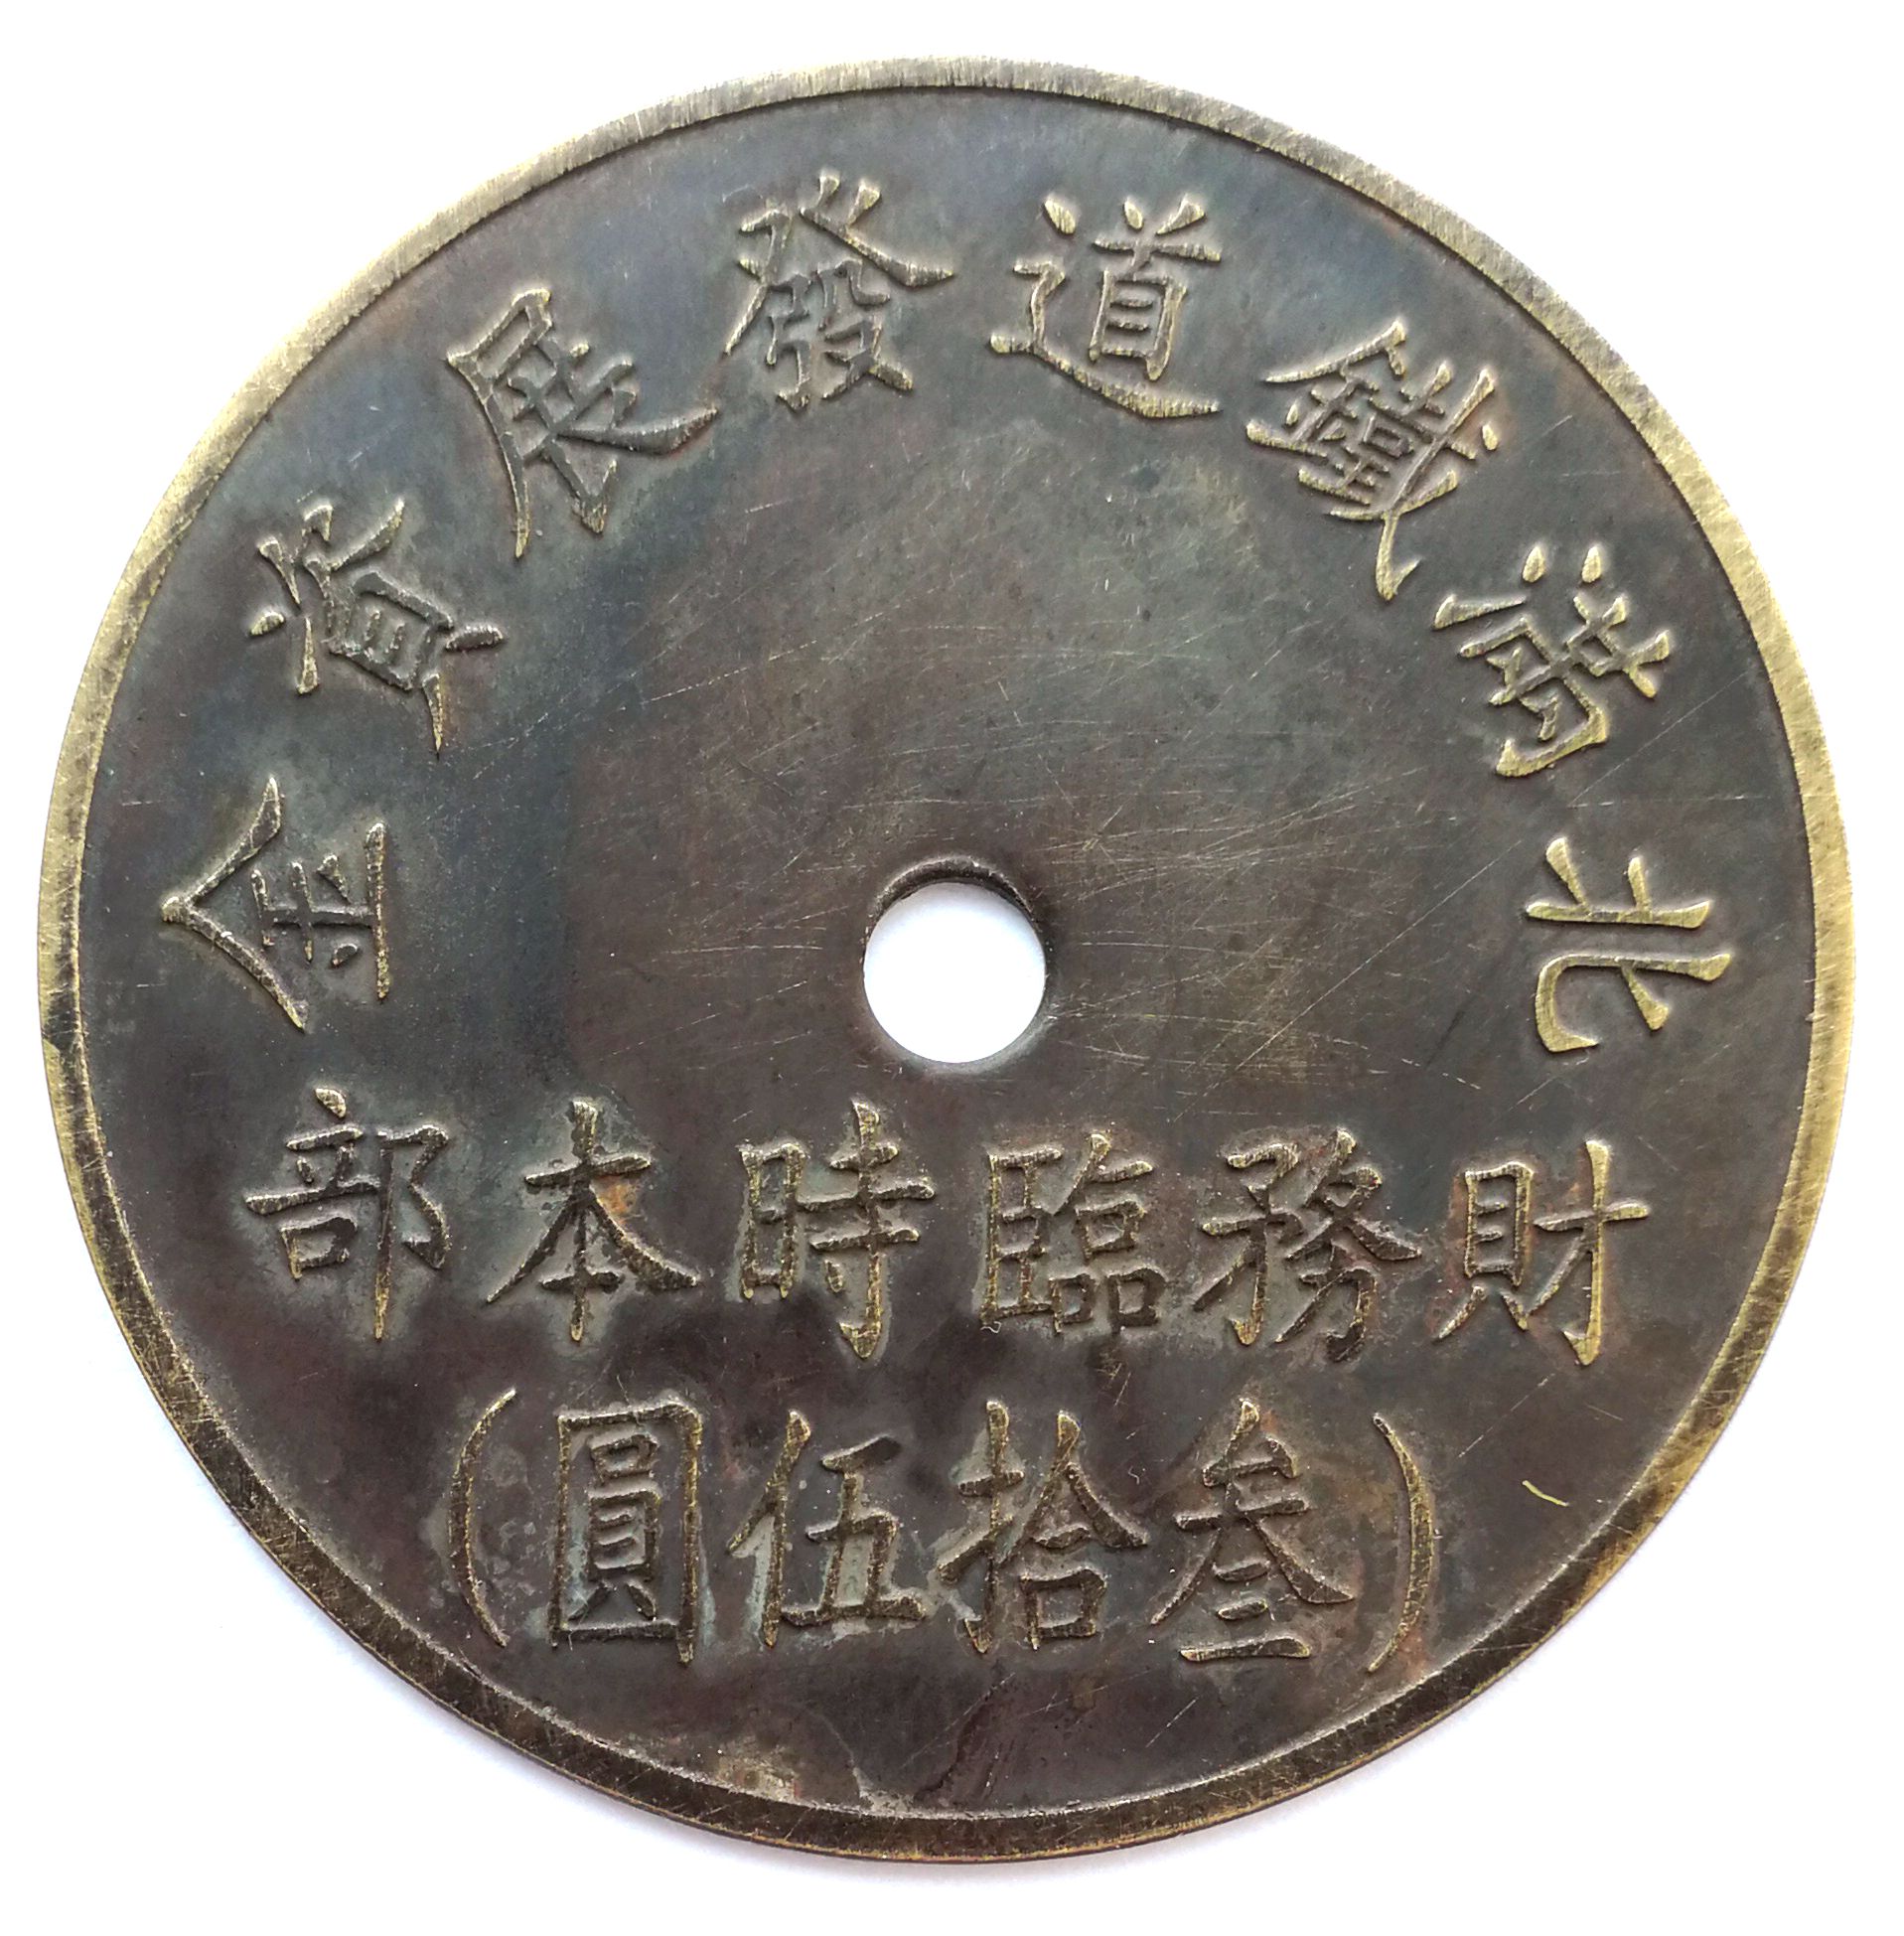 BT474, North Manchukuo Railway Construction Fund, Manchukuo Token, 35 Yen 1945